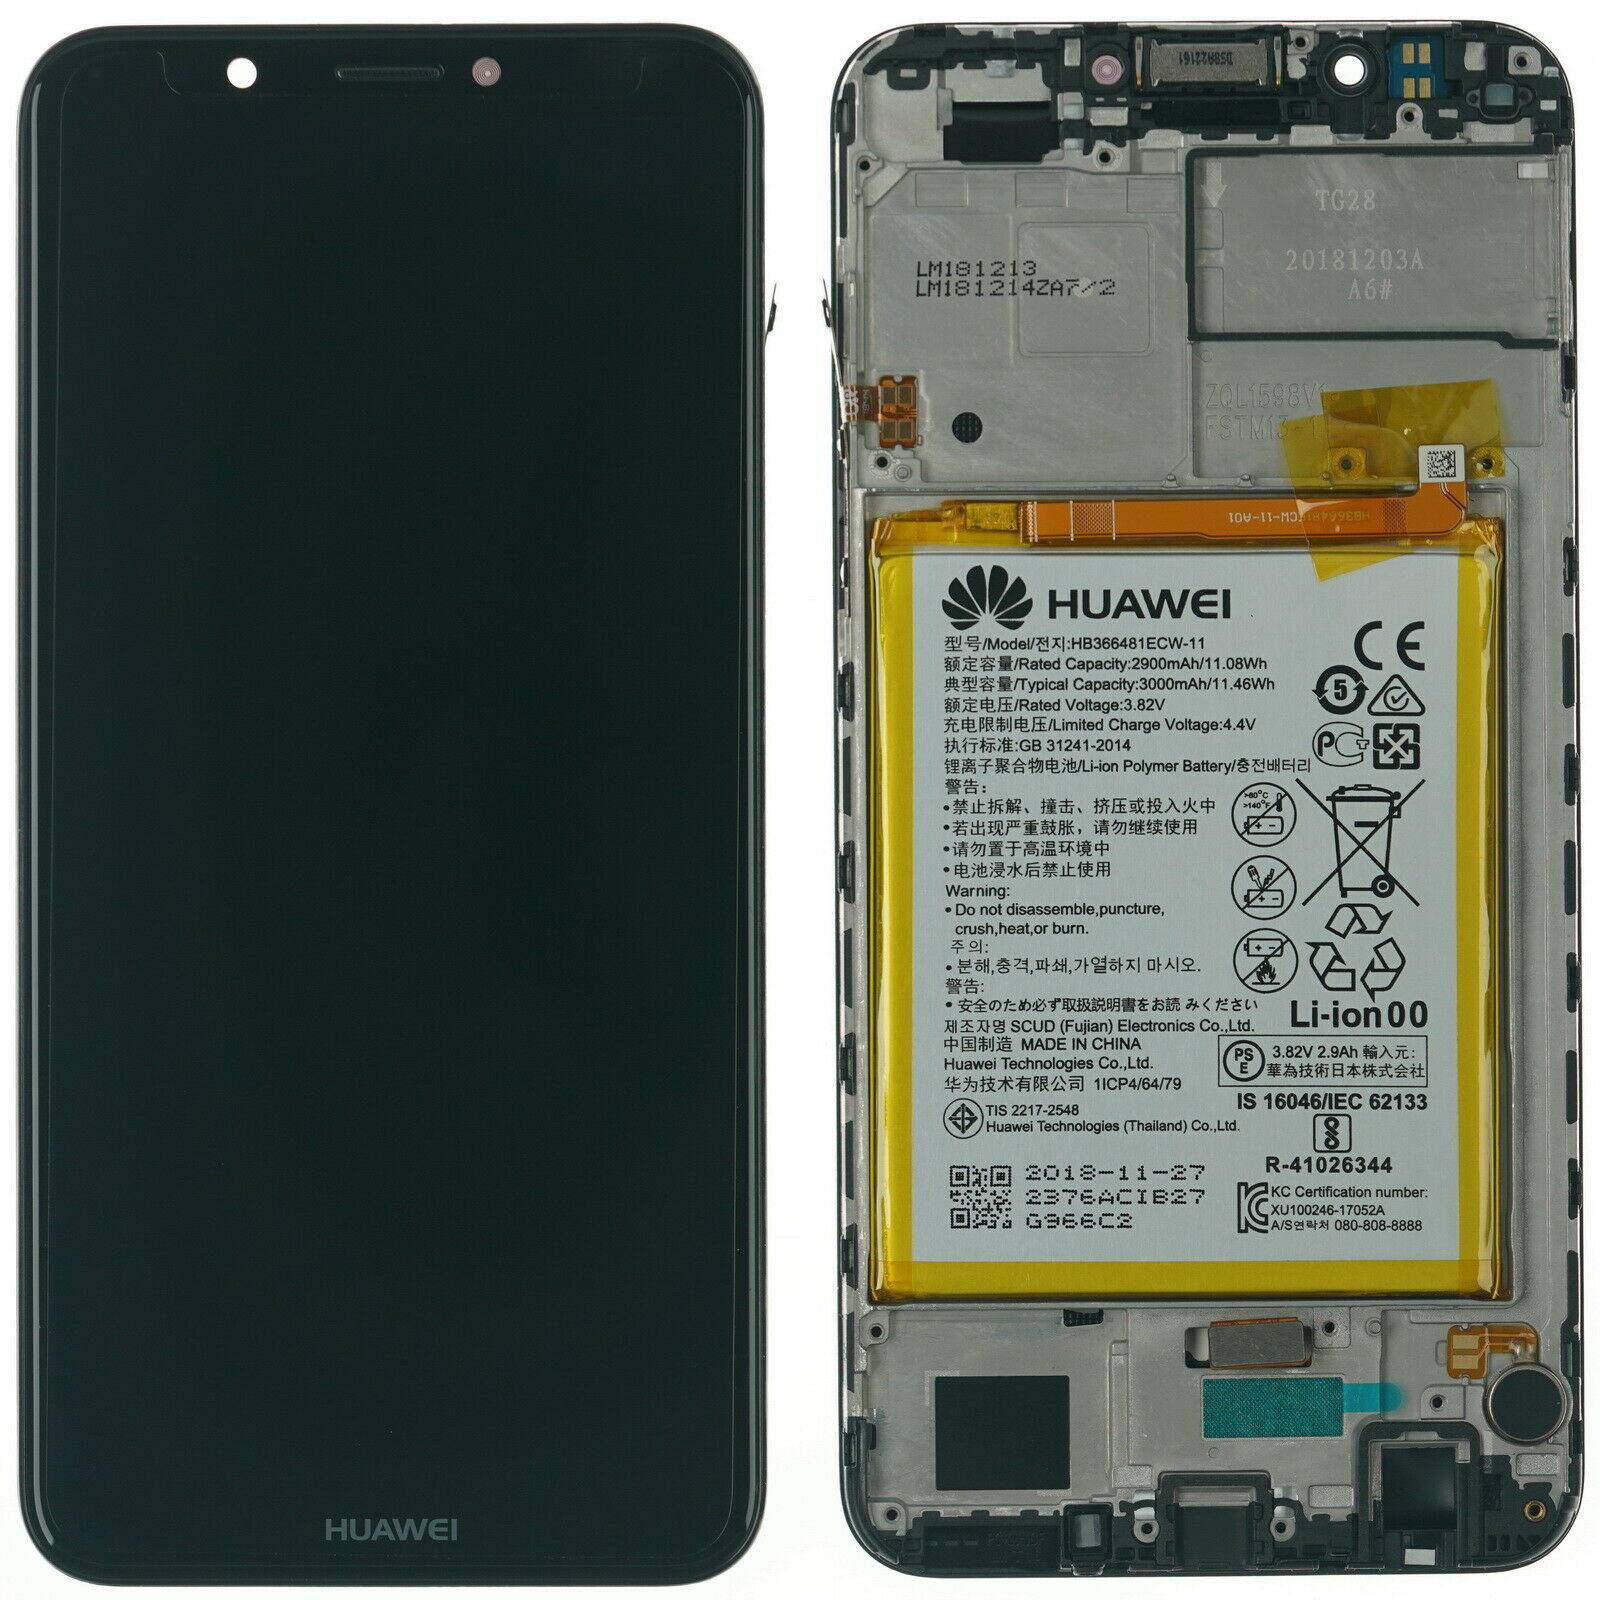 Γνήσιο Original Huawei Y7 Prime 2018 / Y7 Prime (LDN-L01, LDN-L21) HONOR 7C (AUM-L41) LCD Display Assembly Οθόνη + Touch Screen Digitizer Μηχανισμός Αφής + Frame Πλαίσιο + Μπαταρία Battery 02351USA Black (Service Pack By HONOR)